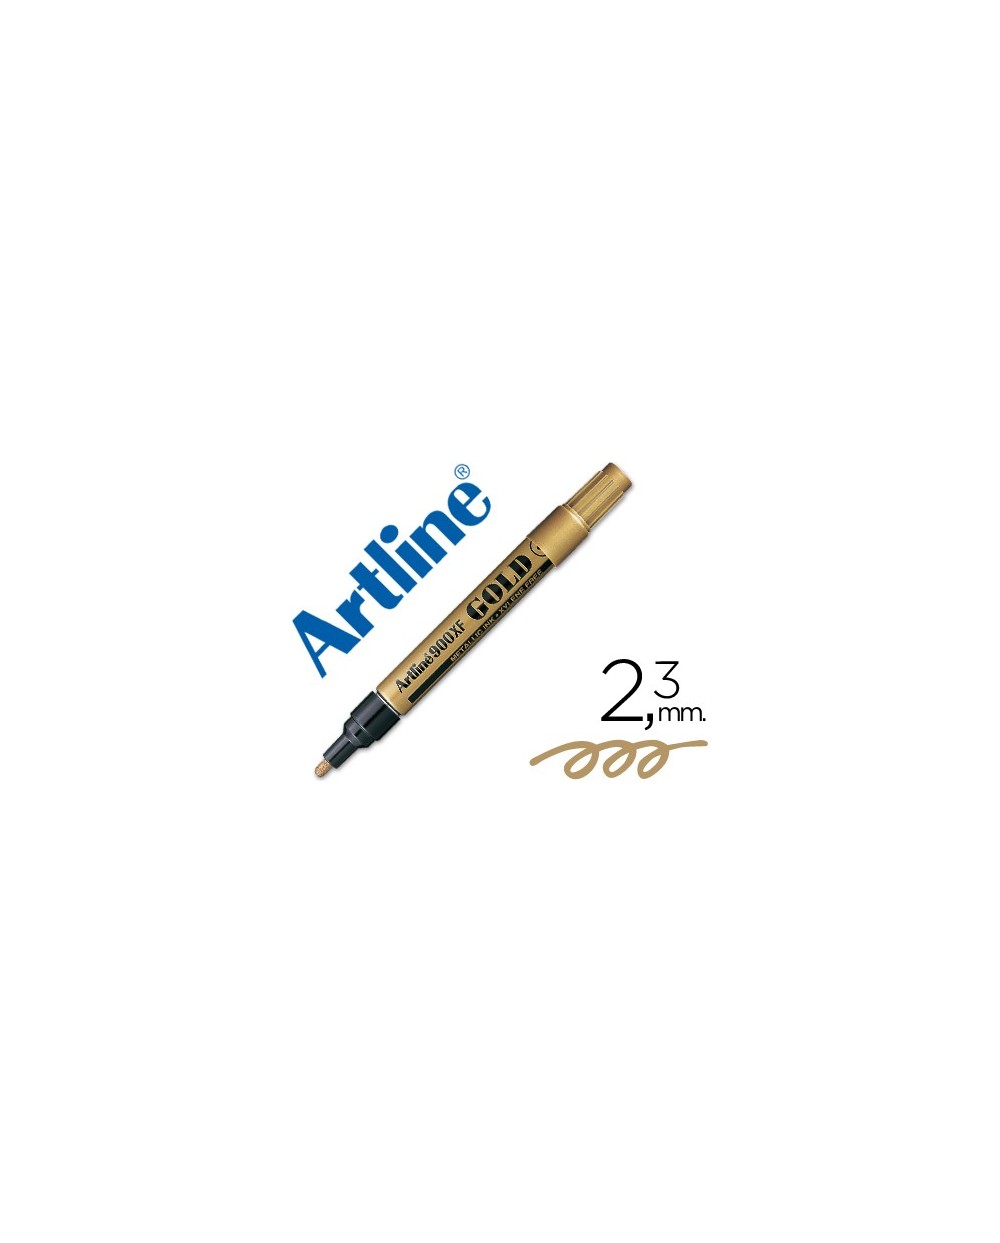 Rotulador artline marcador permanente tinta metalica ek 900 oro punta redonda 23 mm